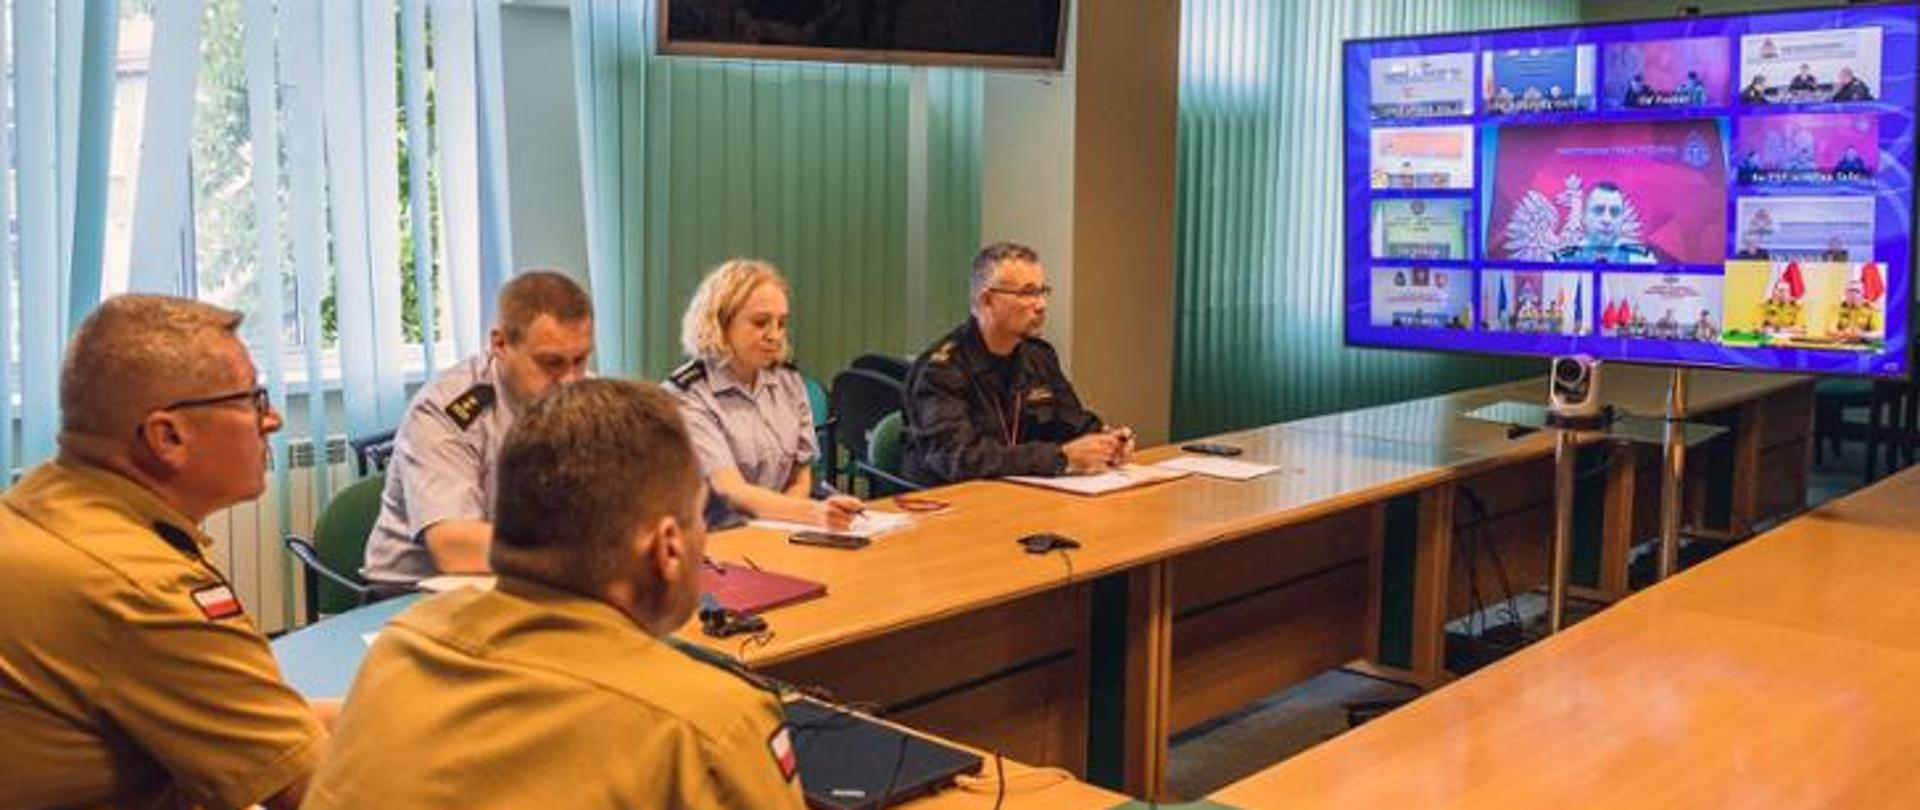 Zdjęcie przedstawia funkcjonariuszy PSP podczas wideokonferencji. Funkcjonariusze siedzą przy stole przed telewizorem na którym widać innych uczestników spotkania.